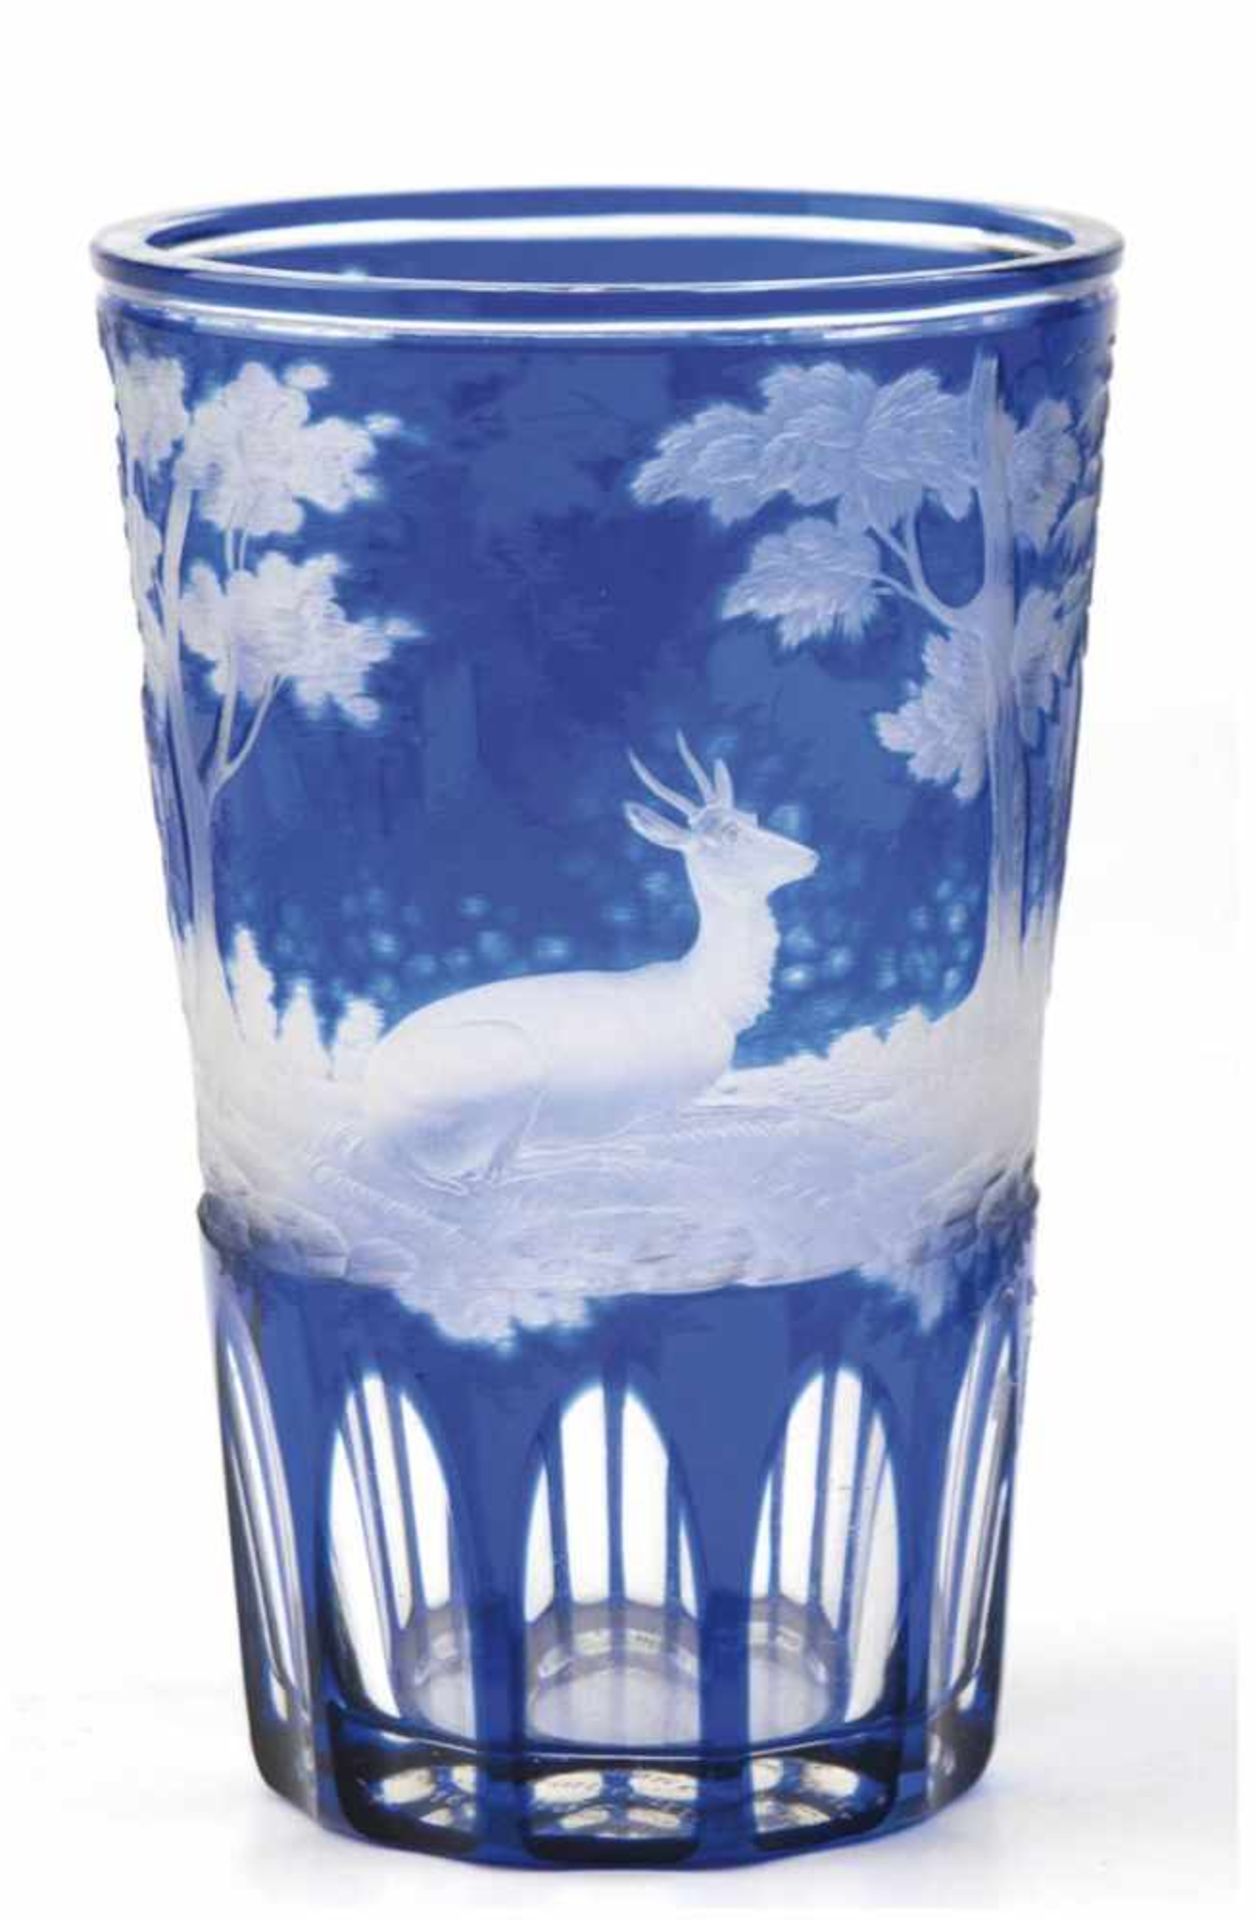 Becherglas, 19. Jh., blau überfangen, umlaufend geschliffene Waldlandschaft mit Rehen, imBoden